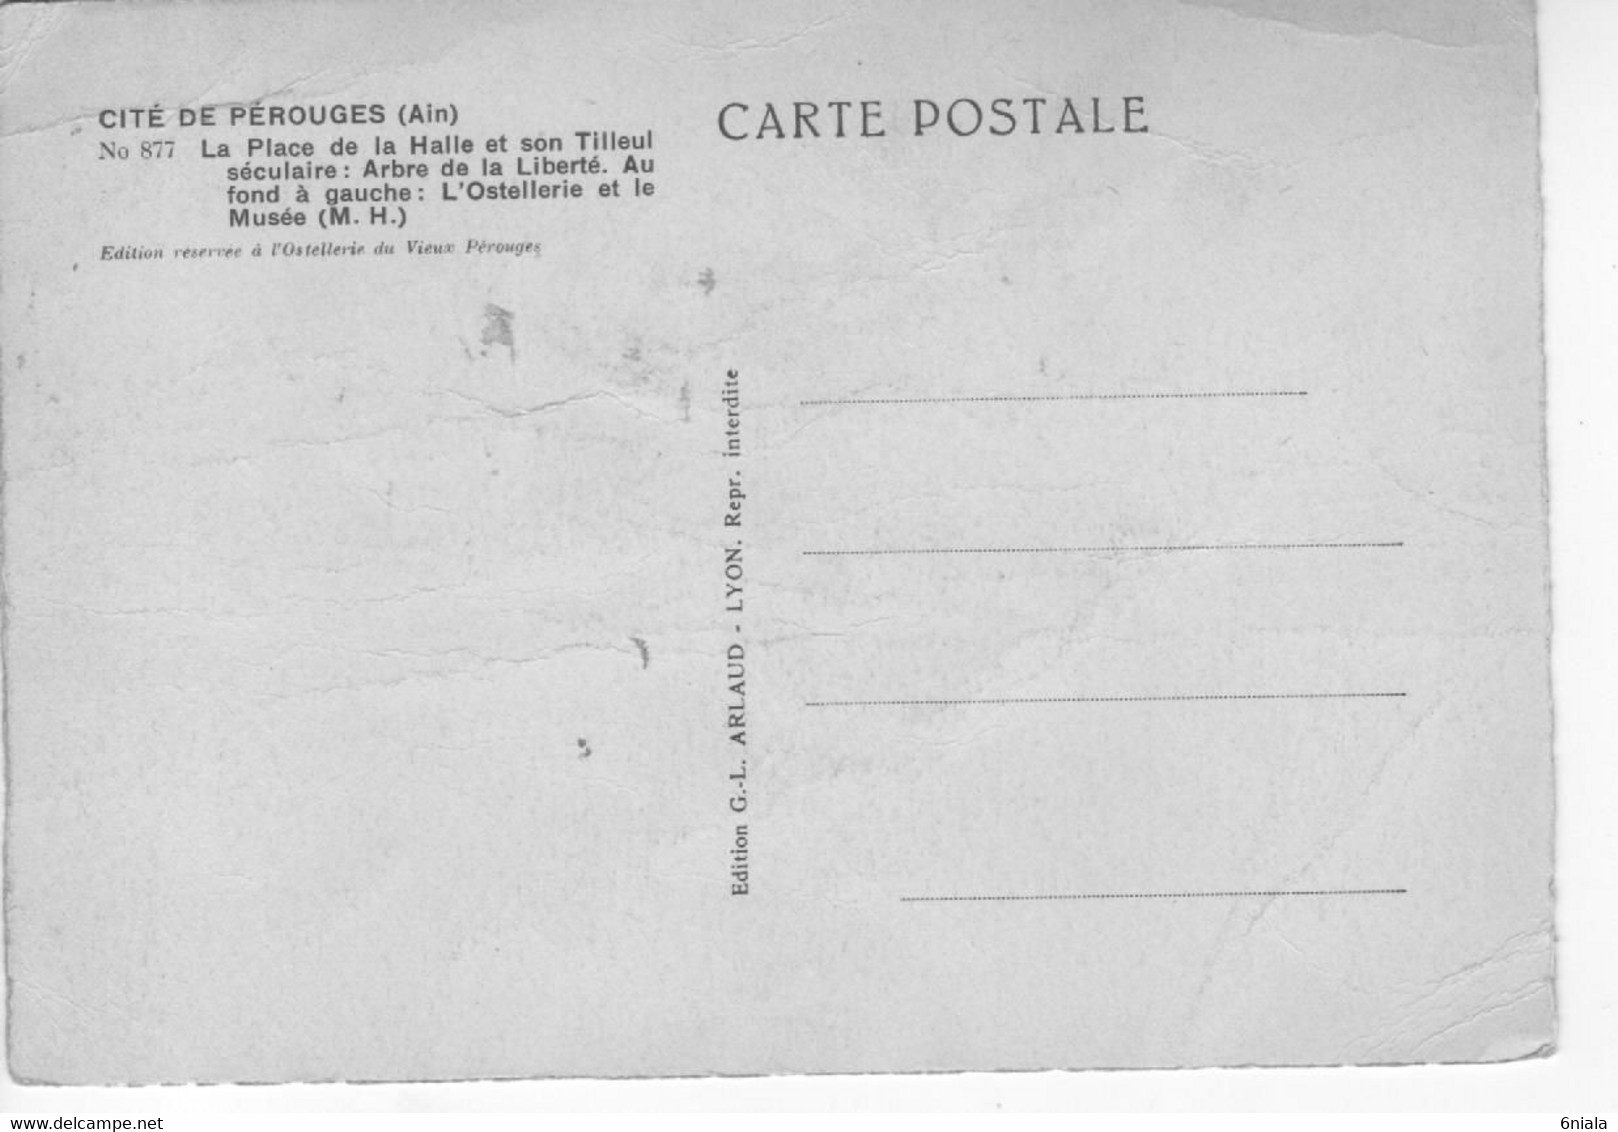 2212  Carte Postale  PEROUGES    La Place De La Halle Et Son Tilleul Séculaire Arbre De La Liberté   01 Ain - Pérouges